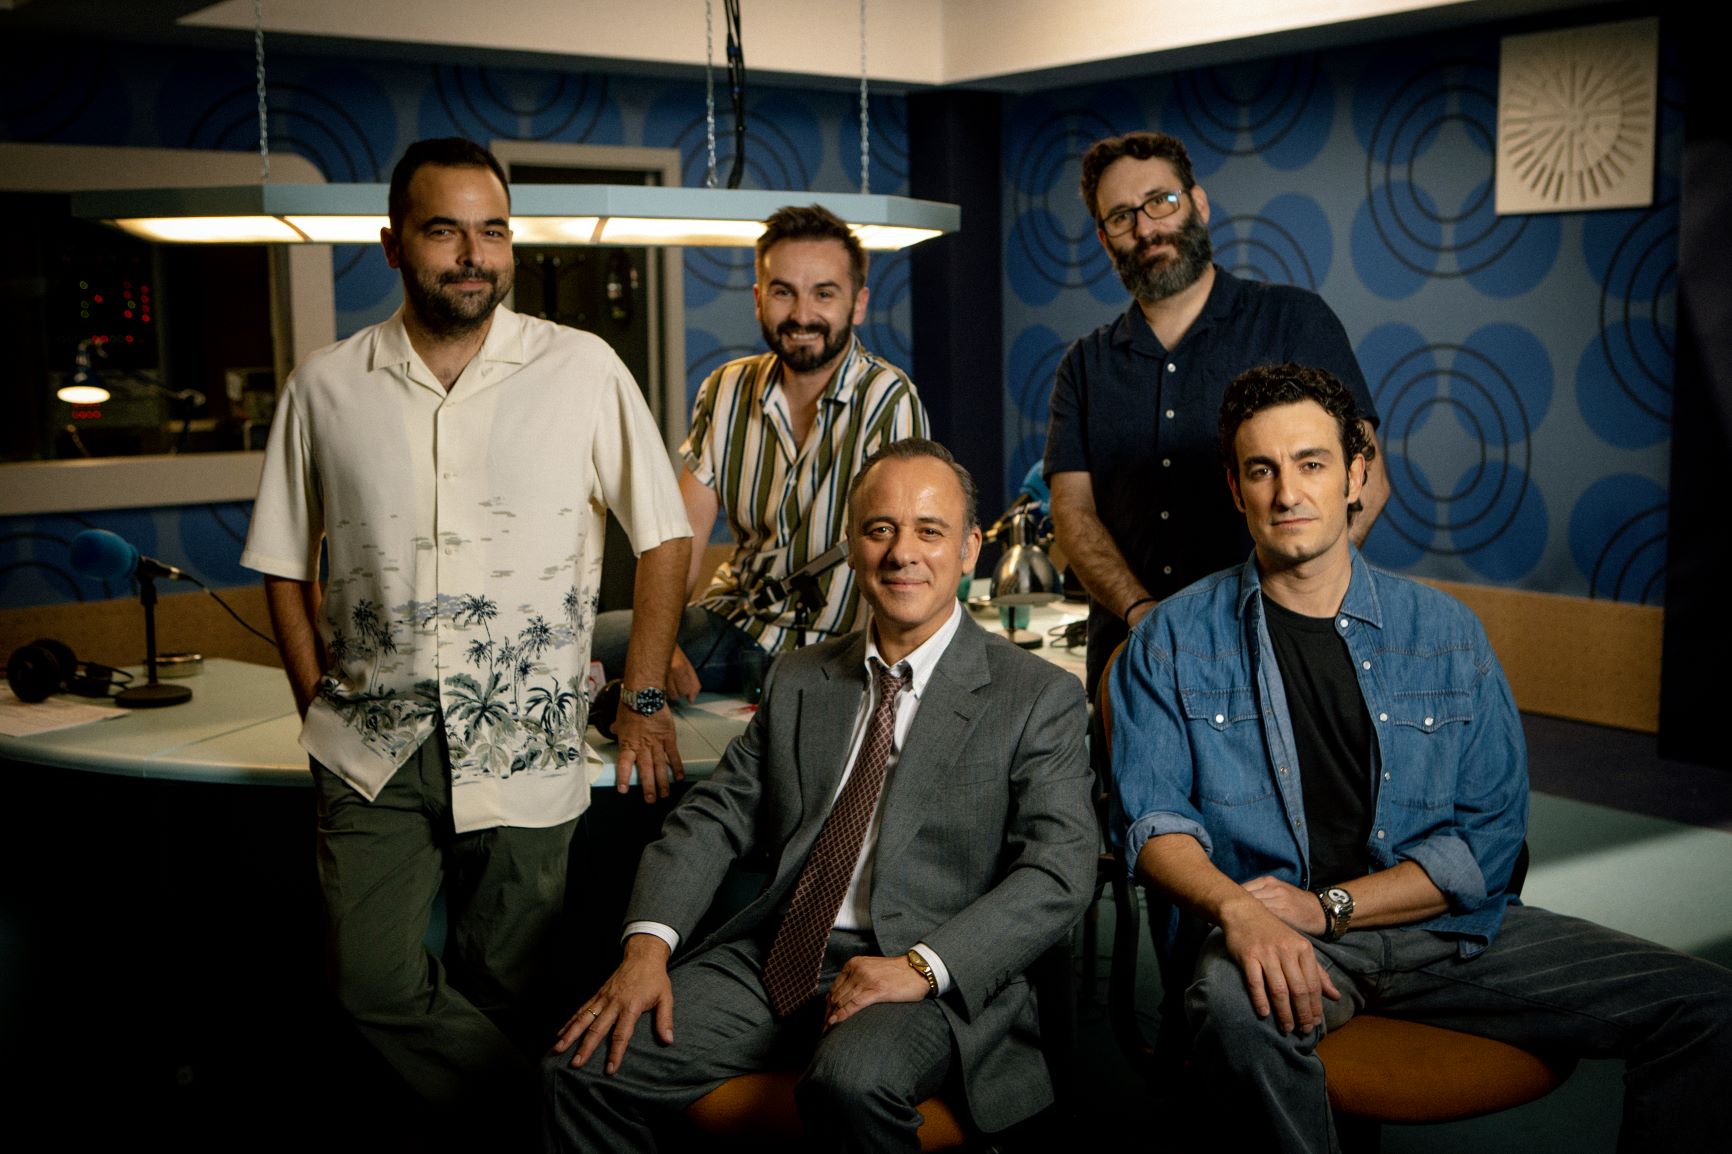 Javier Gutiérrez y Miki Esparbé serán ‘Reyes de la Noche’ en la nueva serie original Movistar+